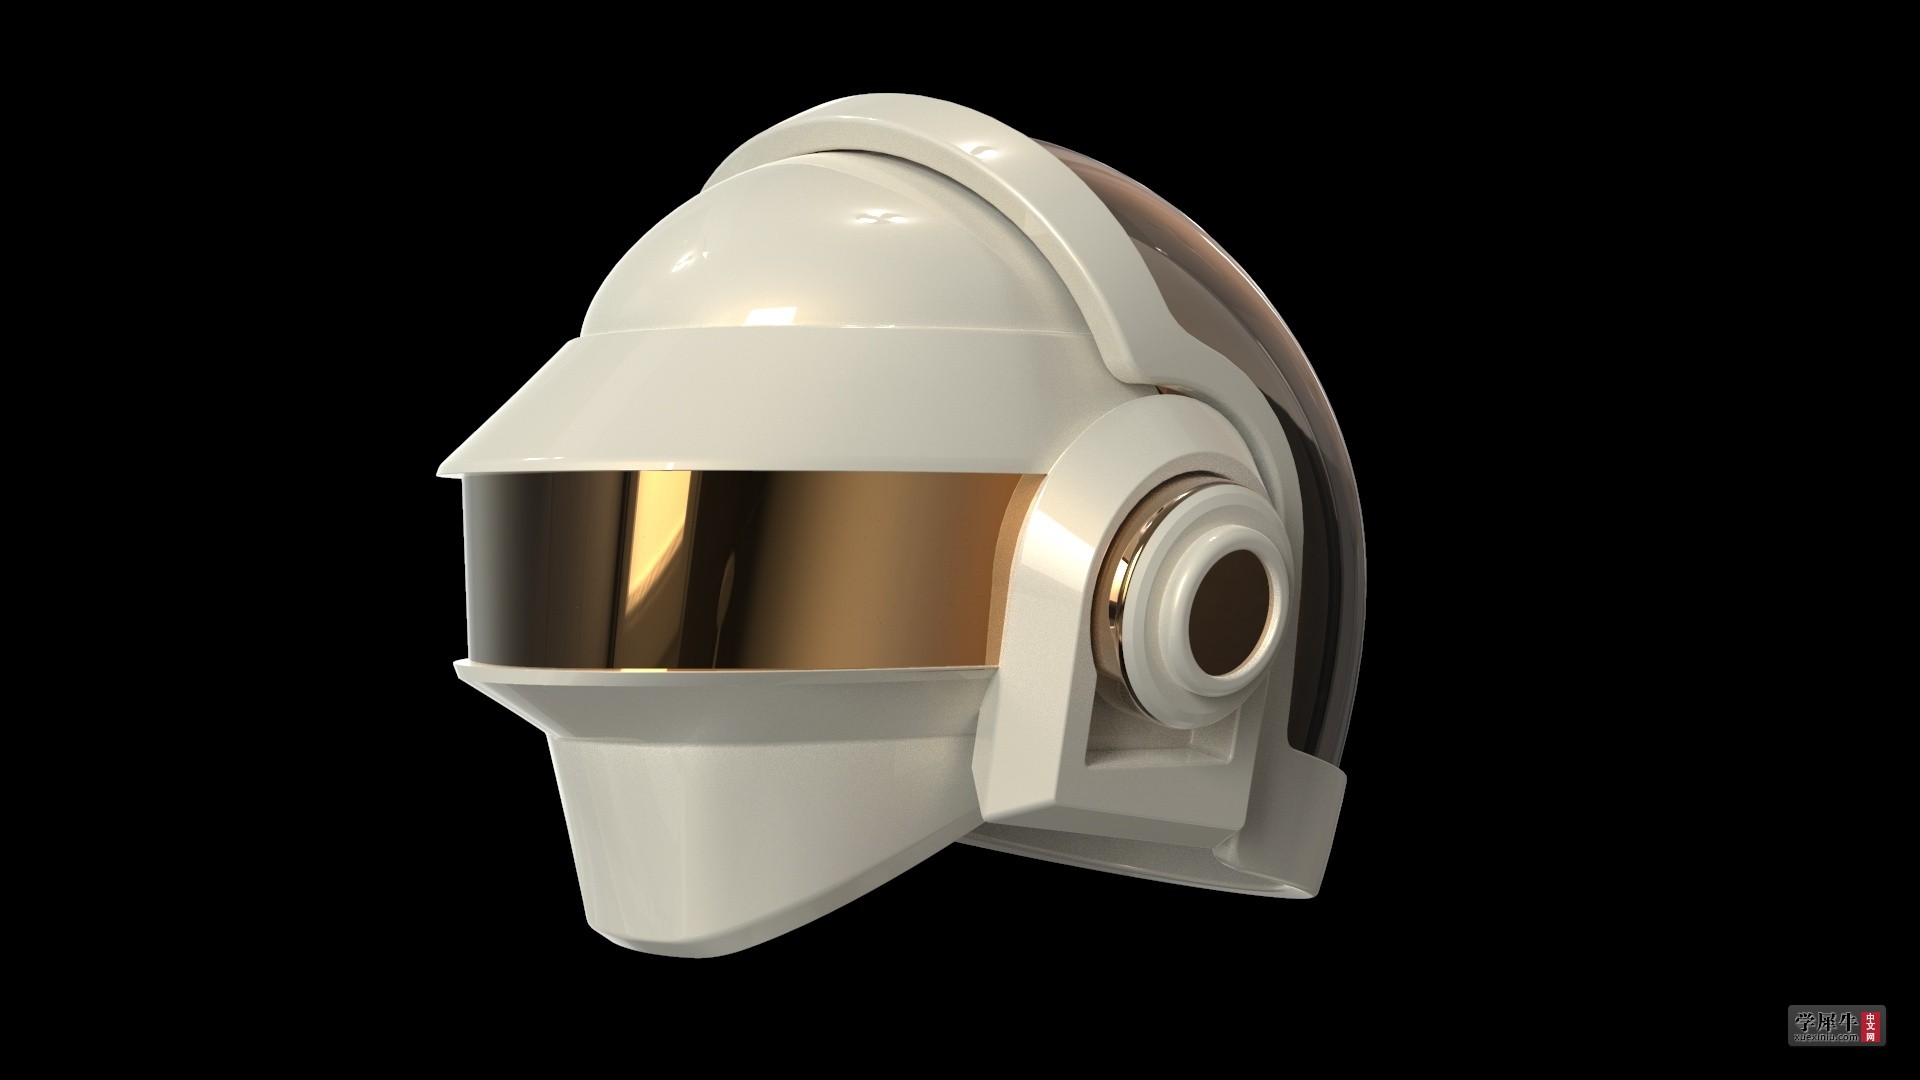 Cyberpunk头盔 科幻头盔